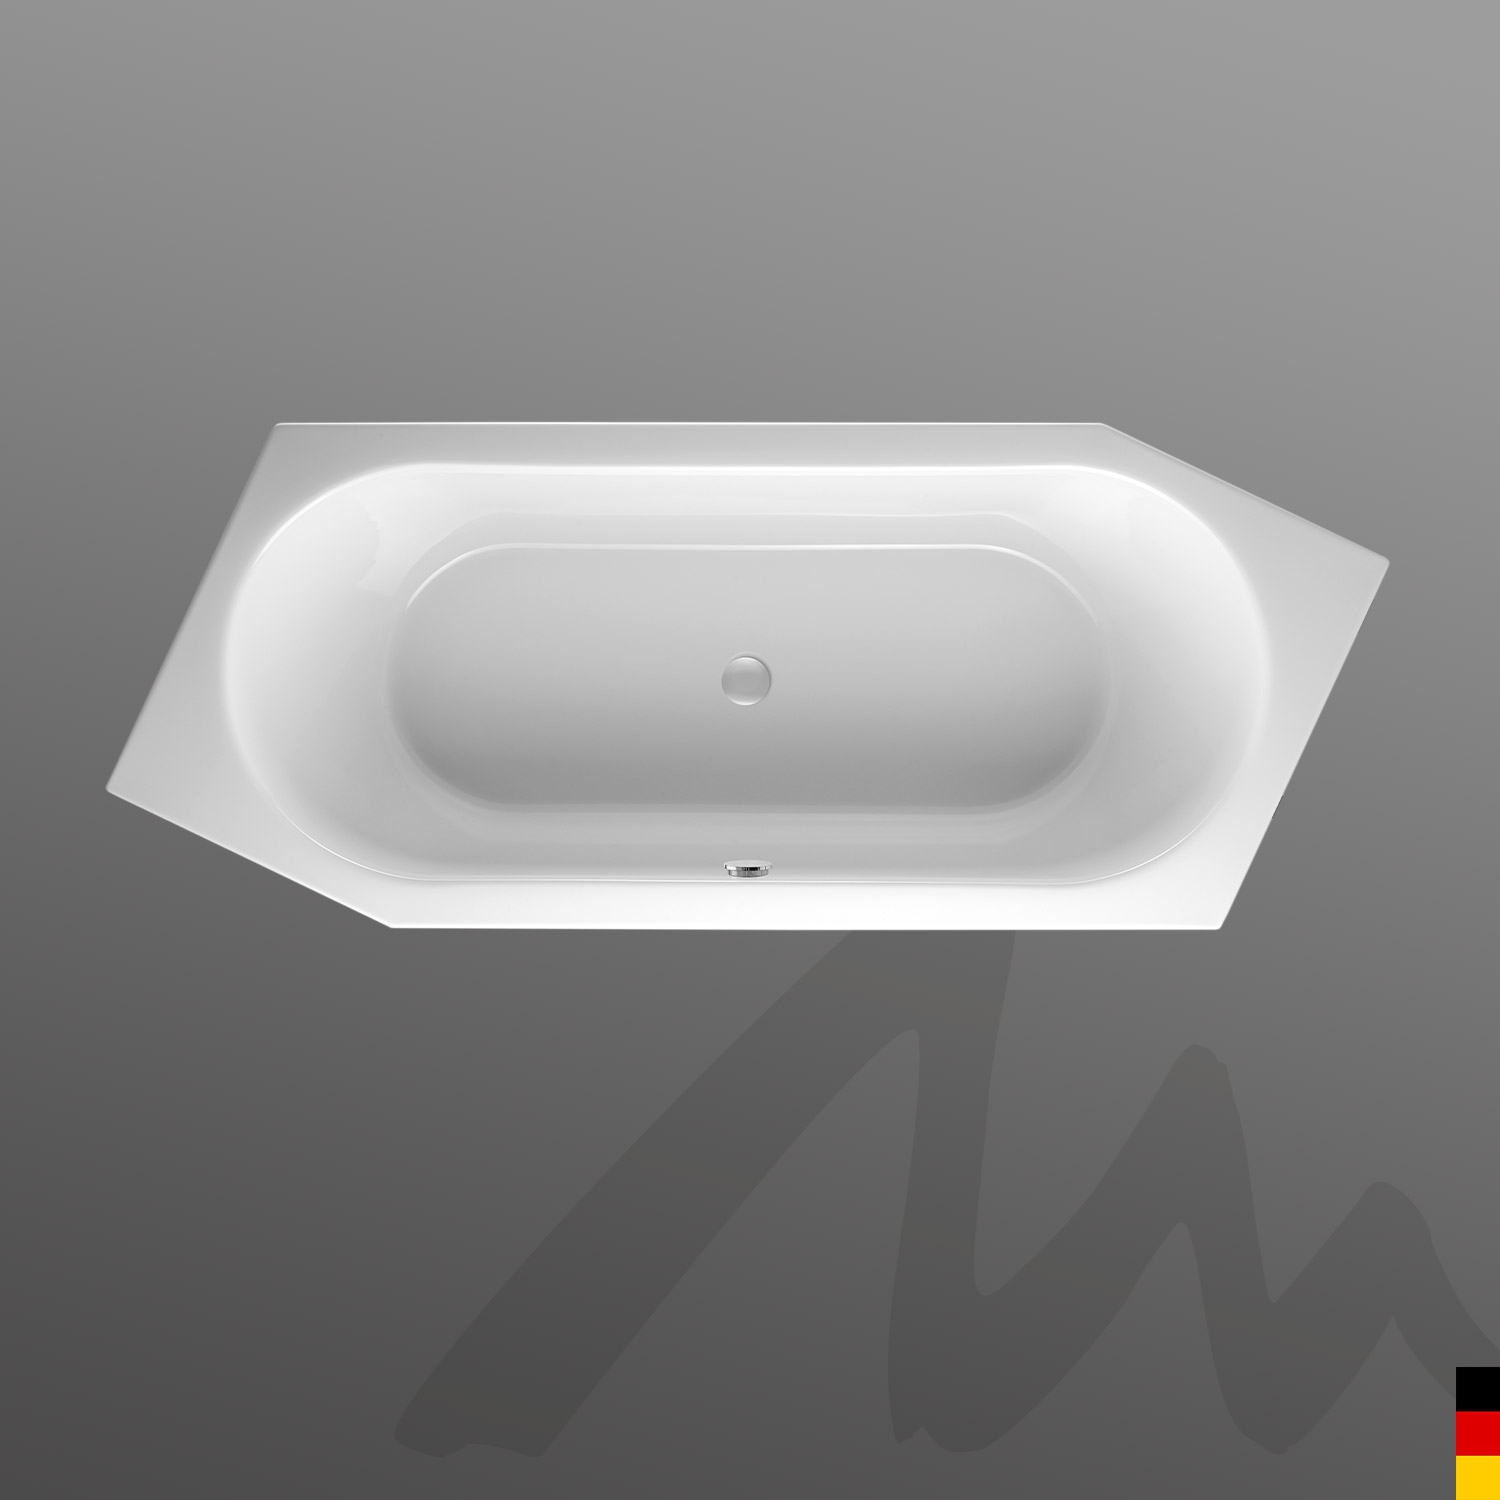 Mauersberger Badewanne 6-Eck Ovata asym 205/80 Ausführung links  205x80x45cm  Farbe:weiß